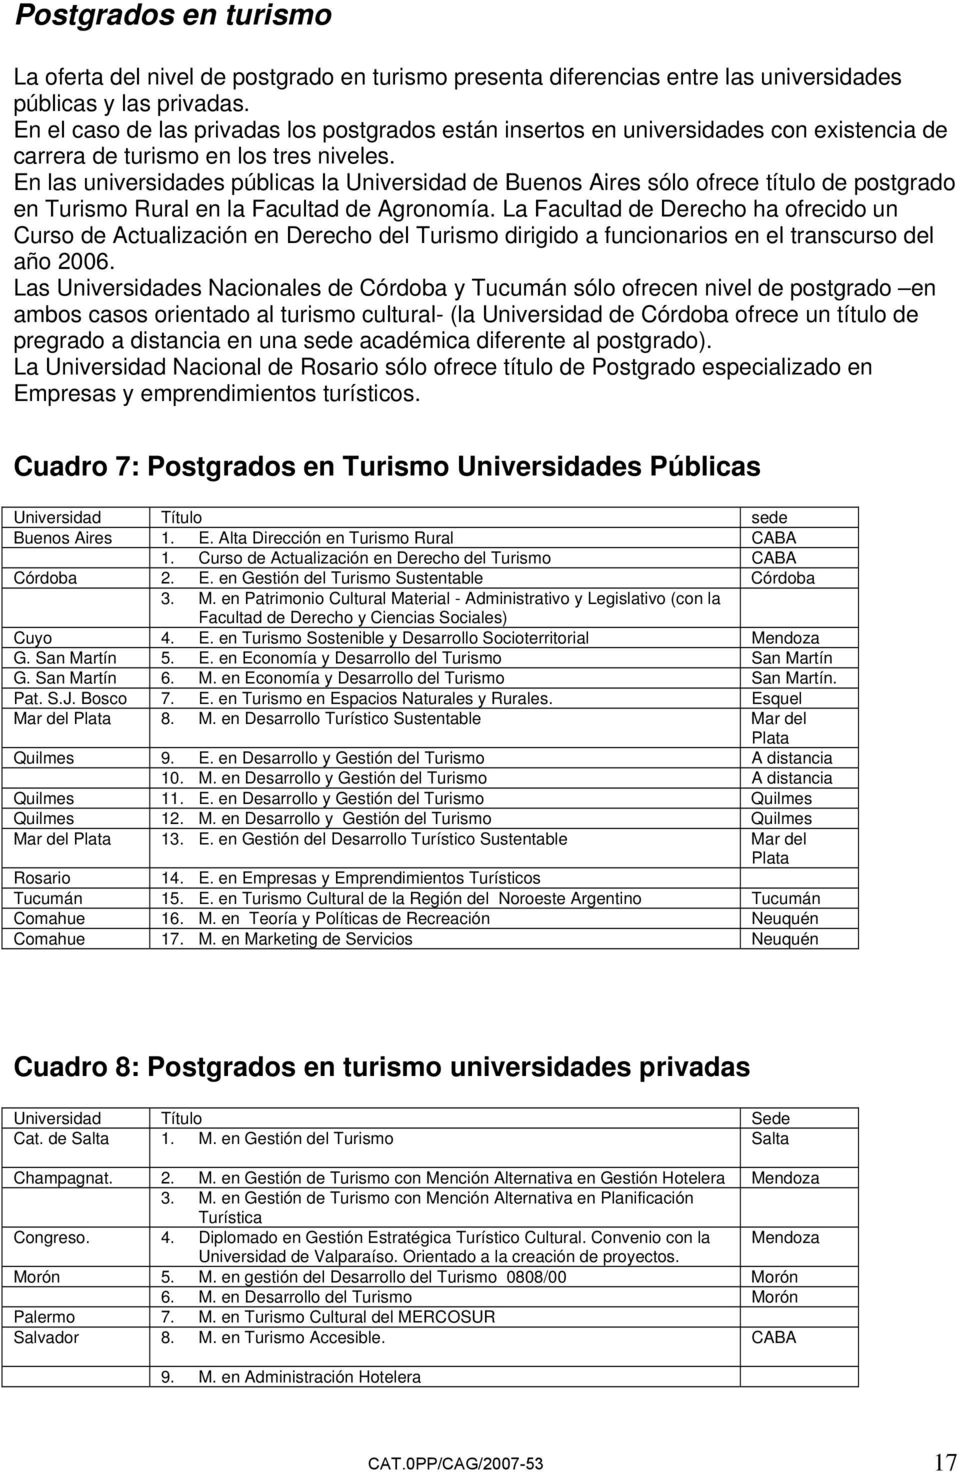 En las universidades públicas la Universidad de Buenos Aires sólo ofrece título de postgrado en Turismo Rural en la Facultad de Agronomía.